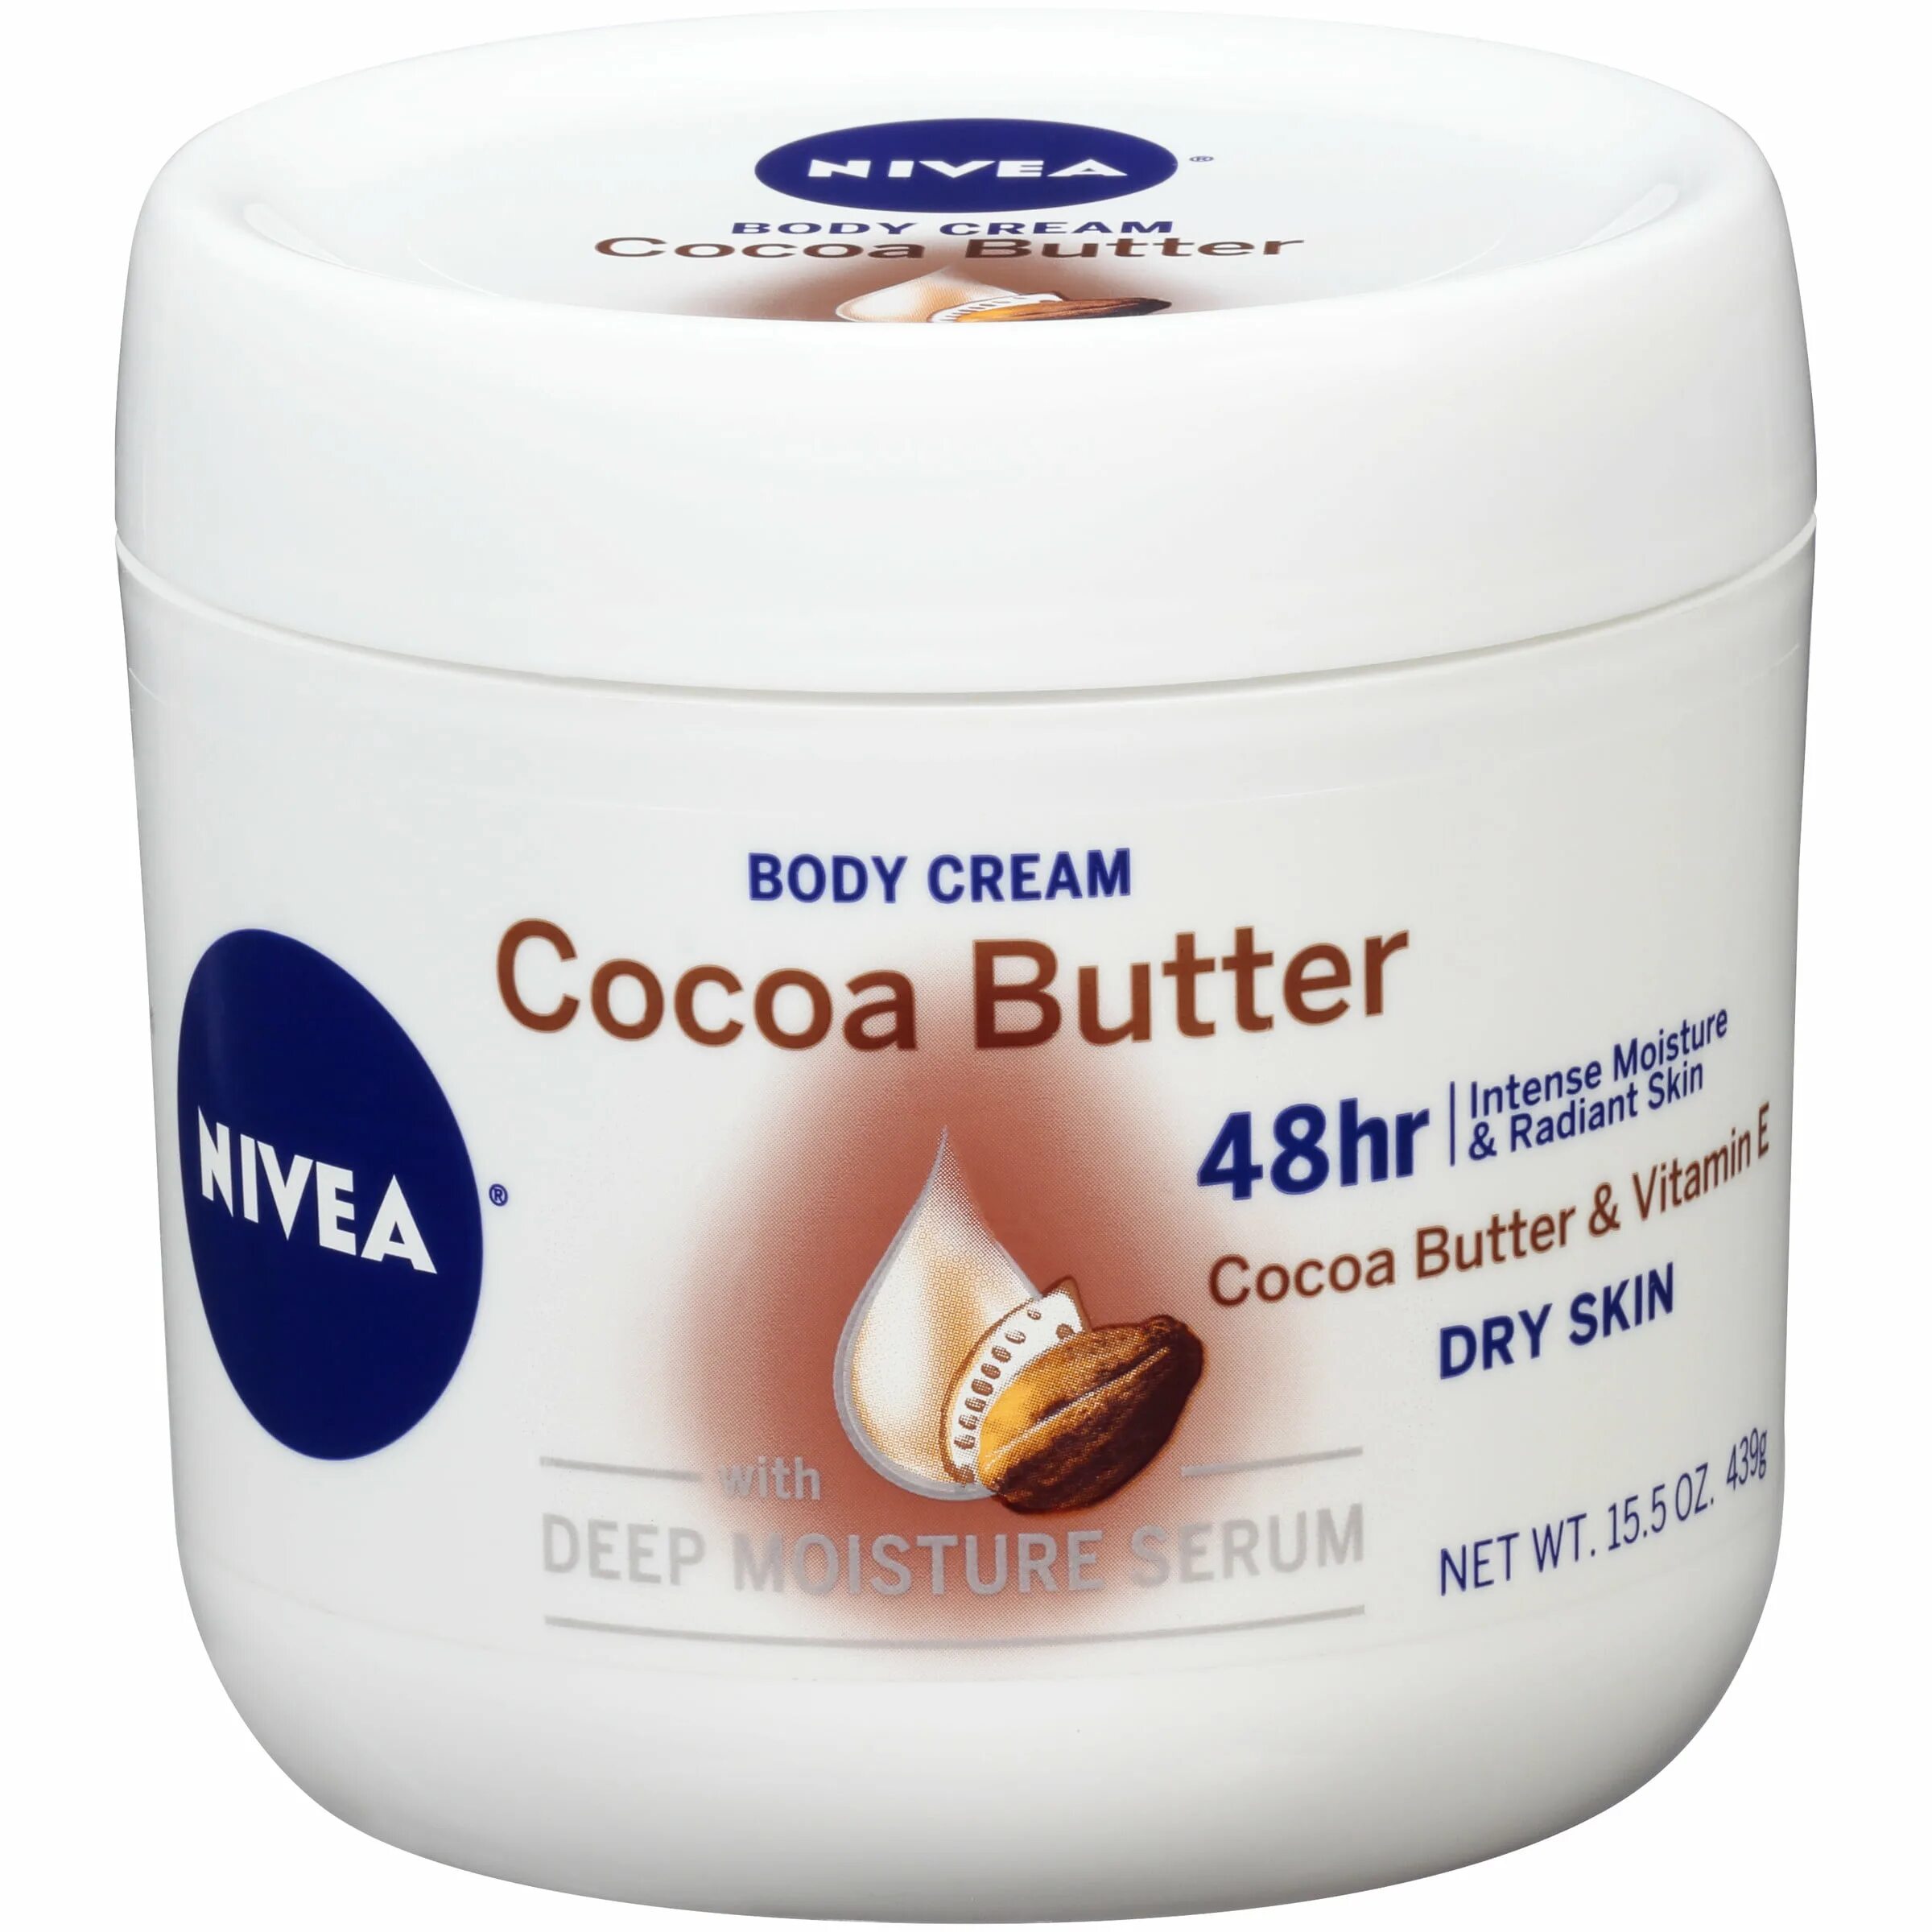 Крем body купить. Nivea Cocoa Butter body Cream with Deep Nourishing Serum, 15.5 Ounce. Nivea 48 часов крем для тела. Нивея Cocoa Butter. Боди крем какао баттер нивея.